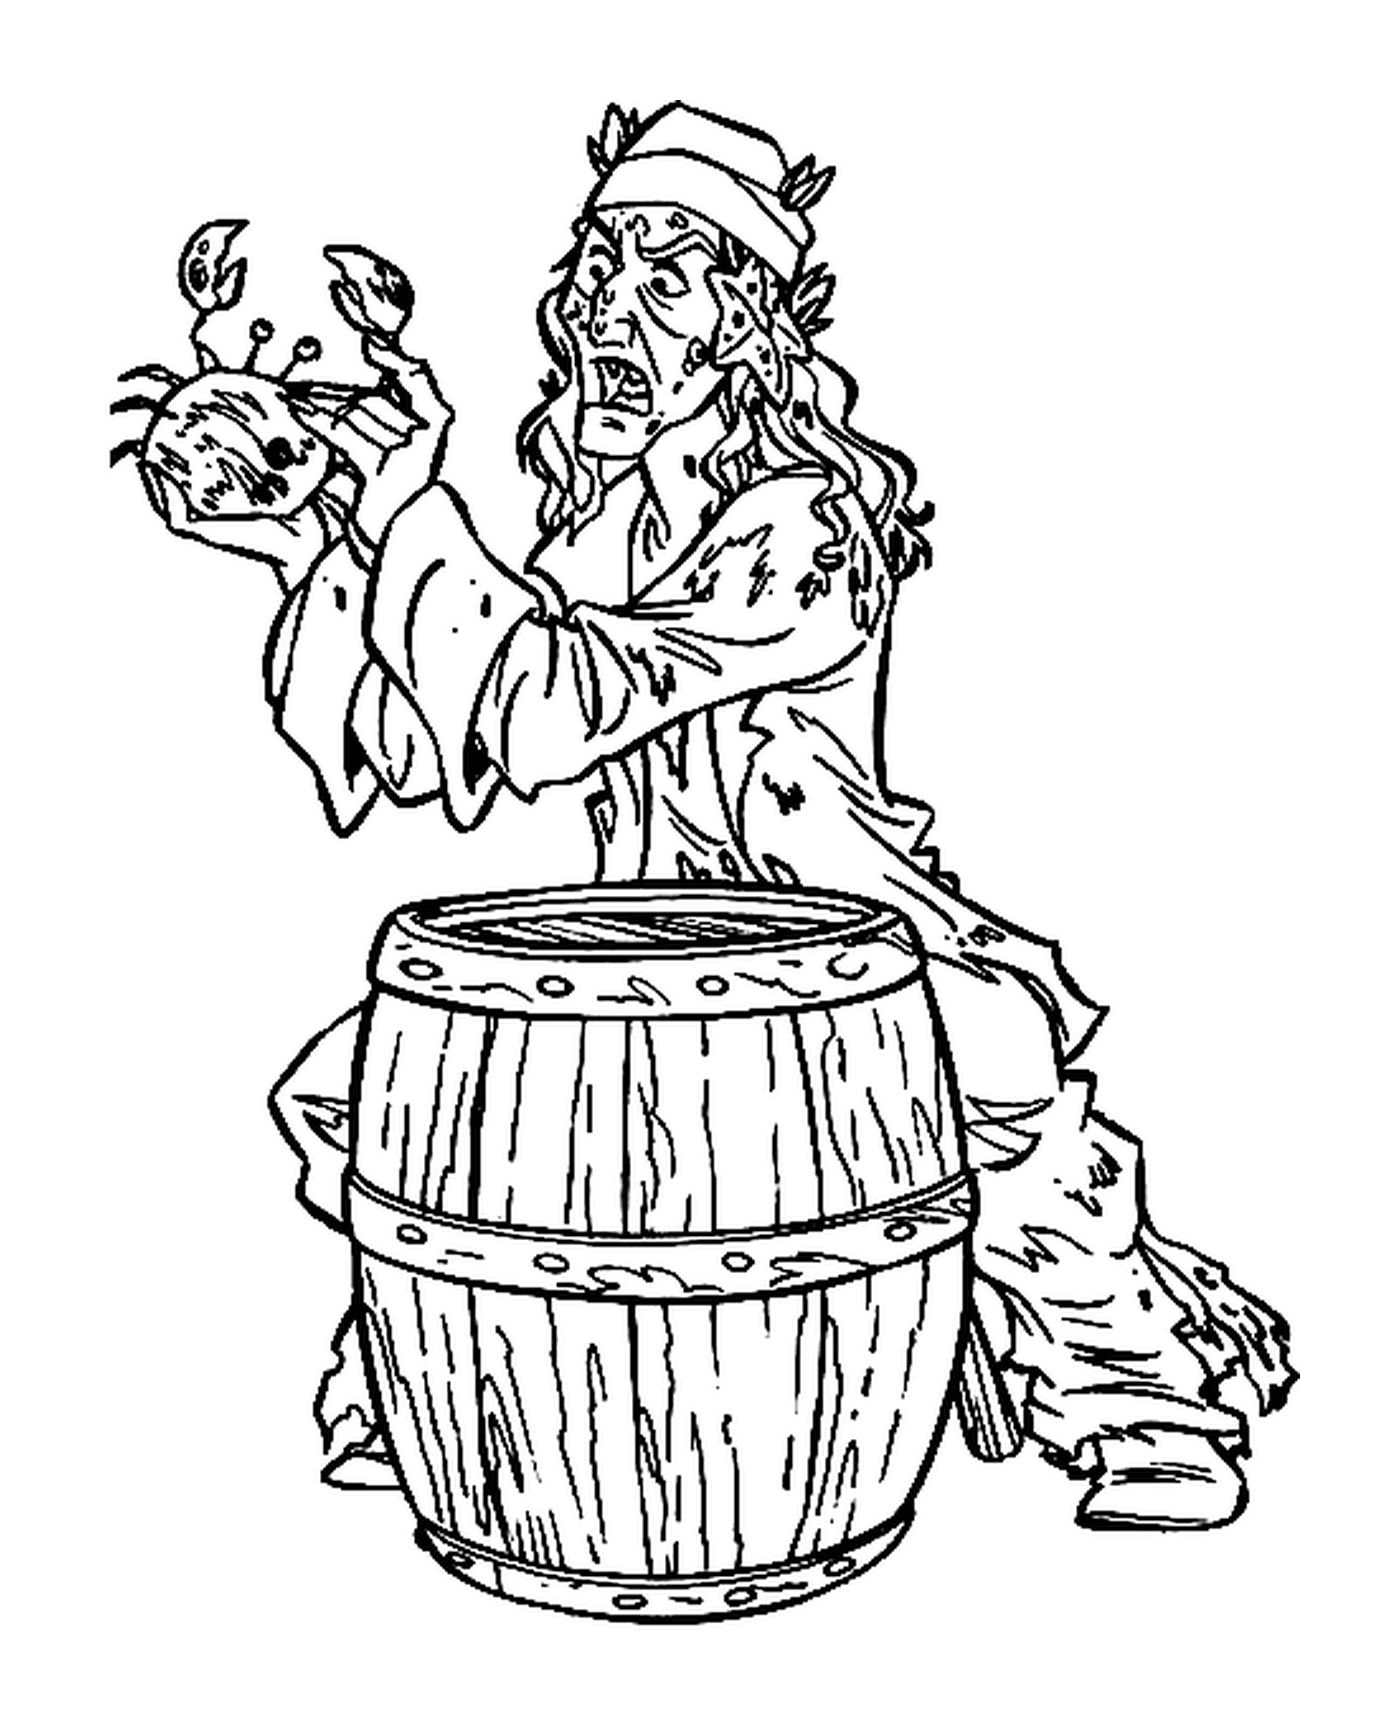  Un pirata maldito sosteniendo un cangrejo detrás de un barril 